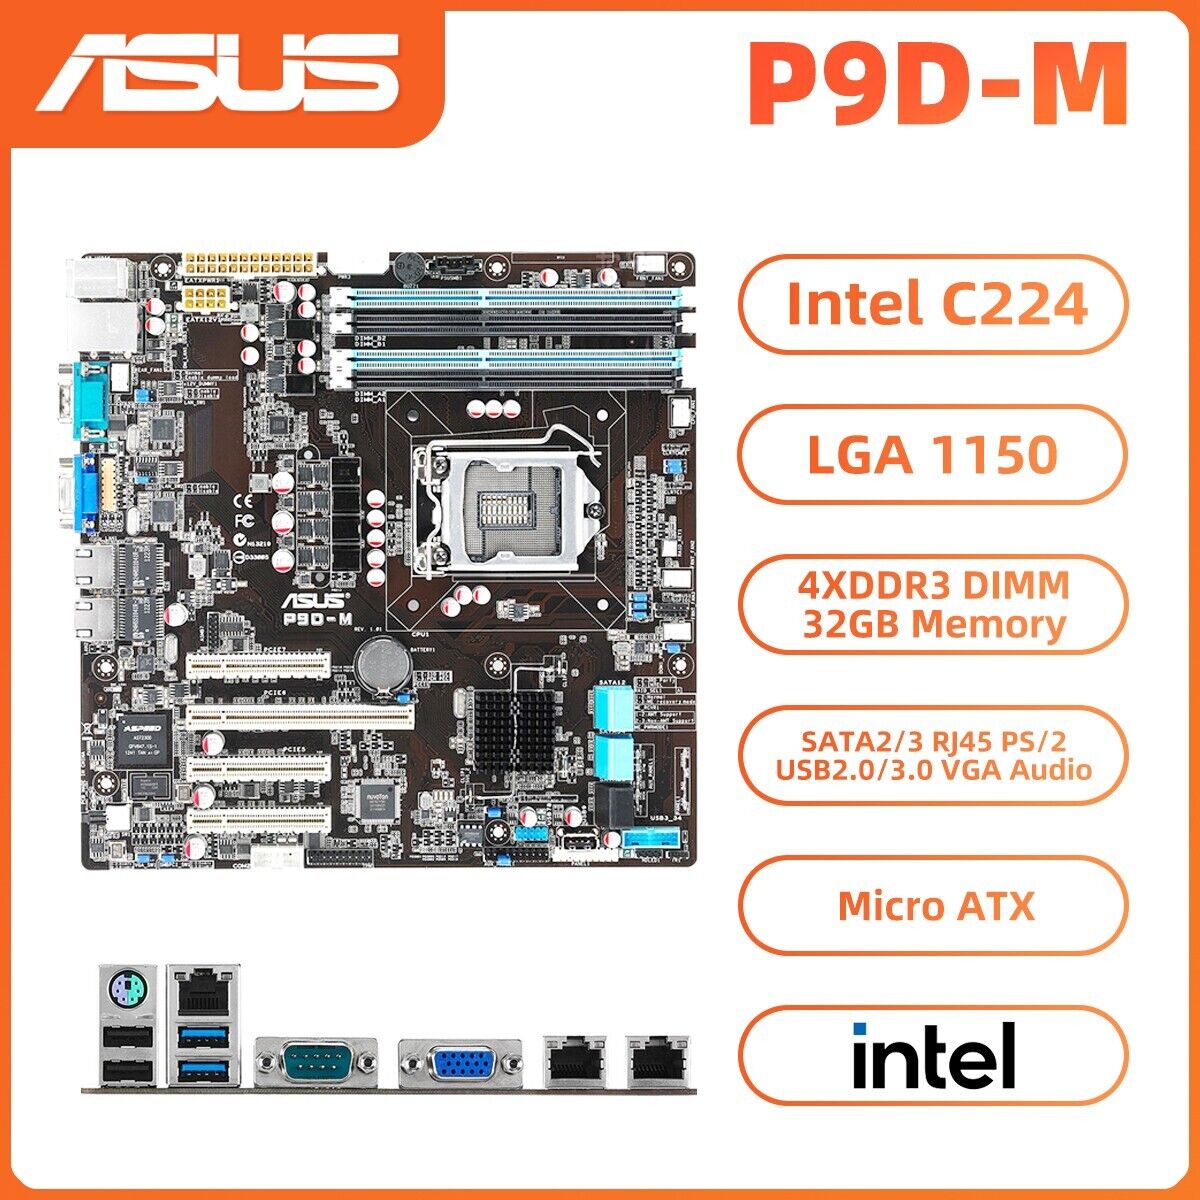 ASUS P9D-M Motherboard M-ATX Intel C224 LGA1150 DDR3 SATA2/3 VGA PS/2 RJ45 D-Sub